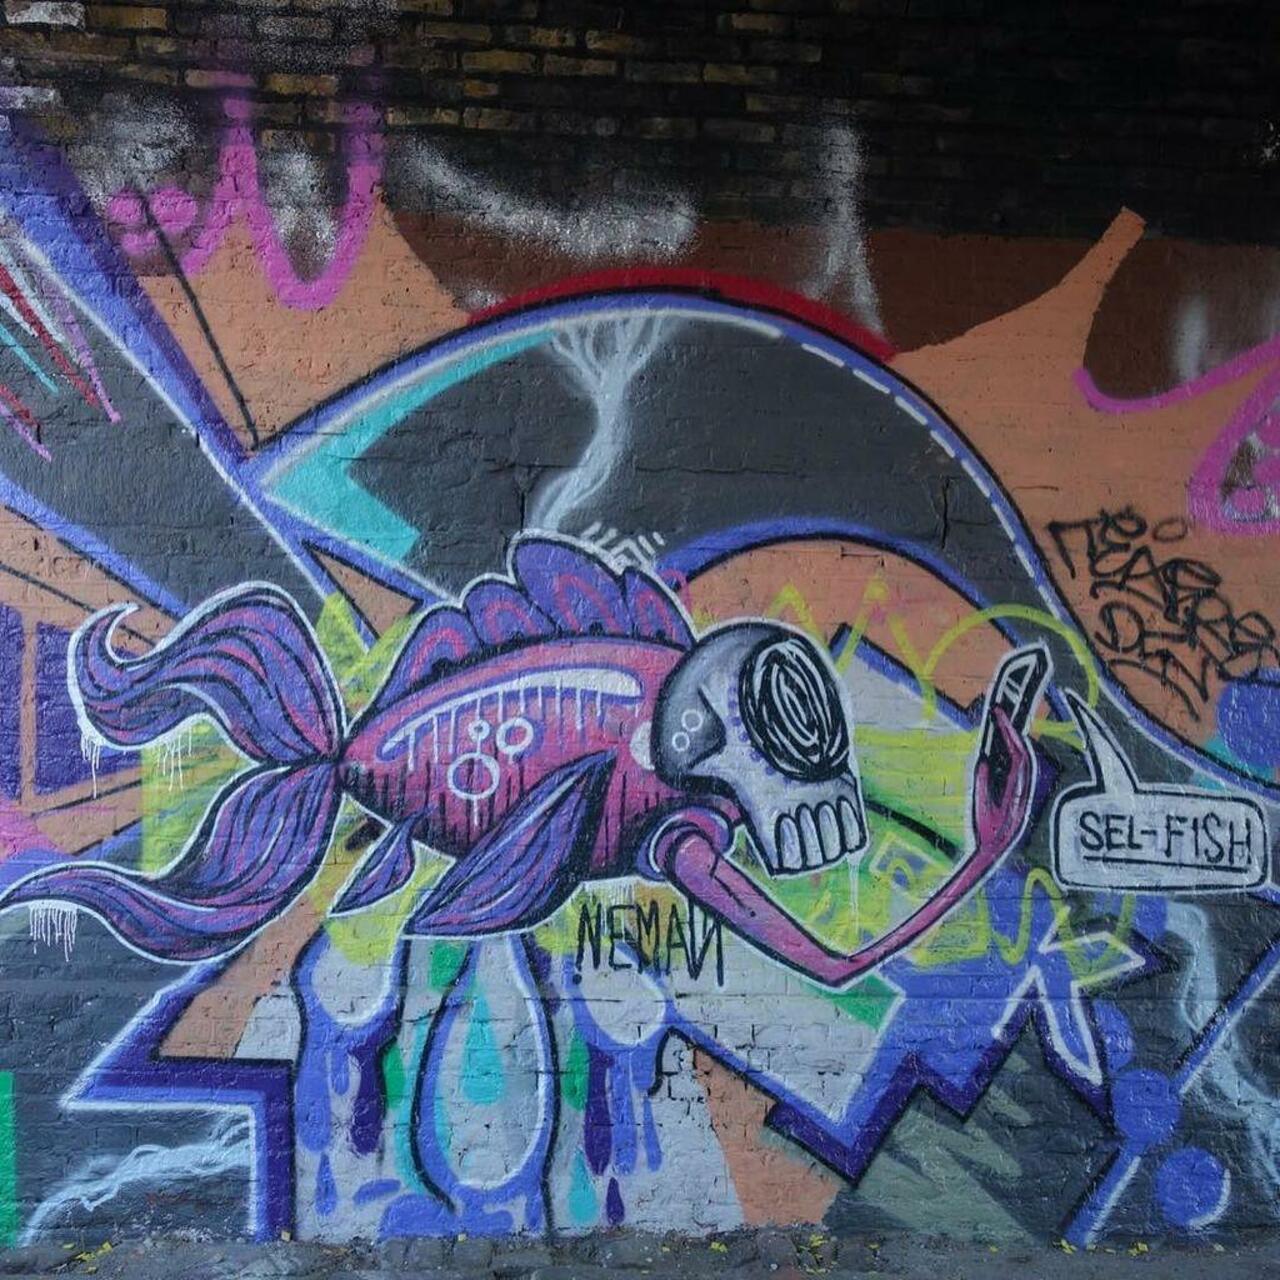 PunArt. It's a Sel-fish!
#streetart #streetartlondon #urbanart #streetphotography #murals #art #graffiti #graff #gr… http://t.co/WWXhwWu3aF